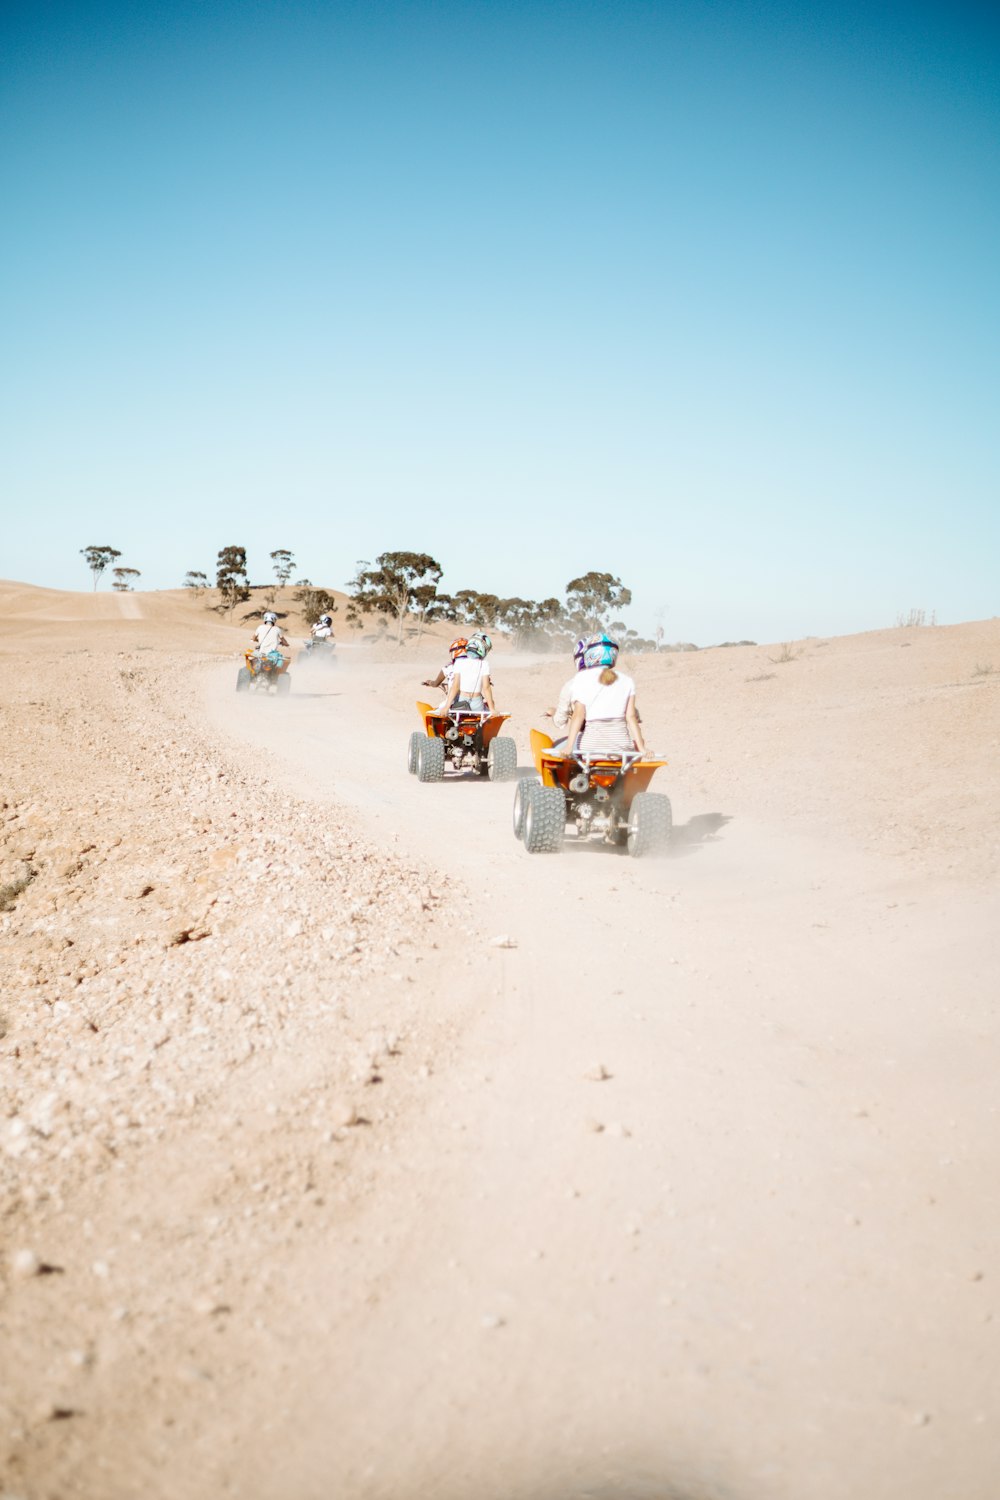 昼間、茶色の砂浜をバイクで走る人々